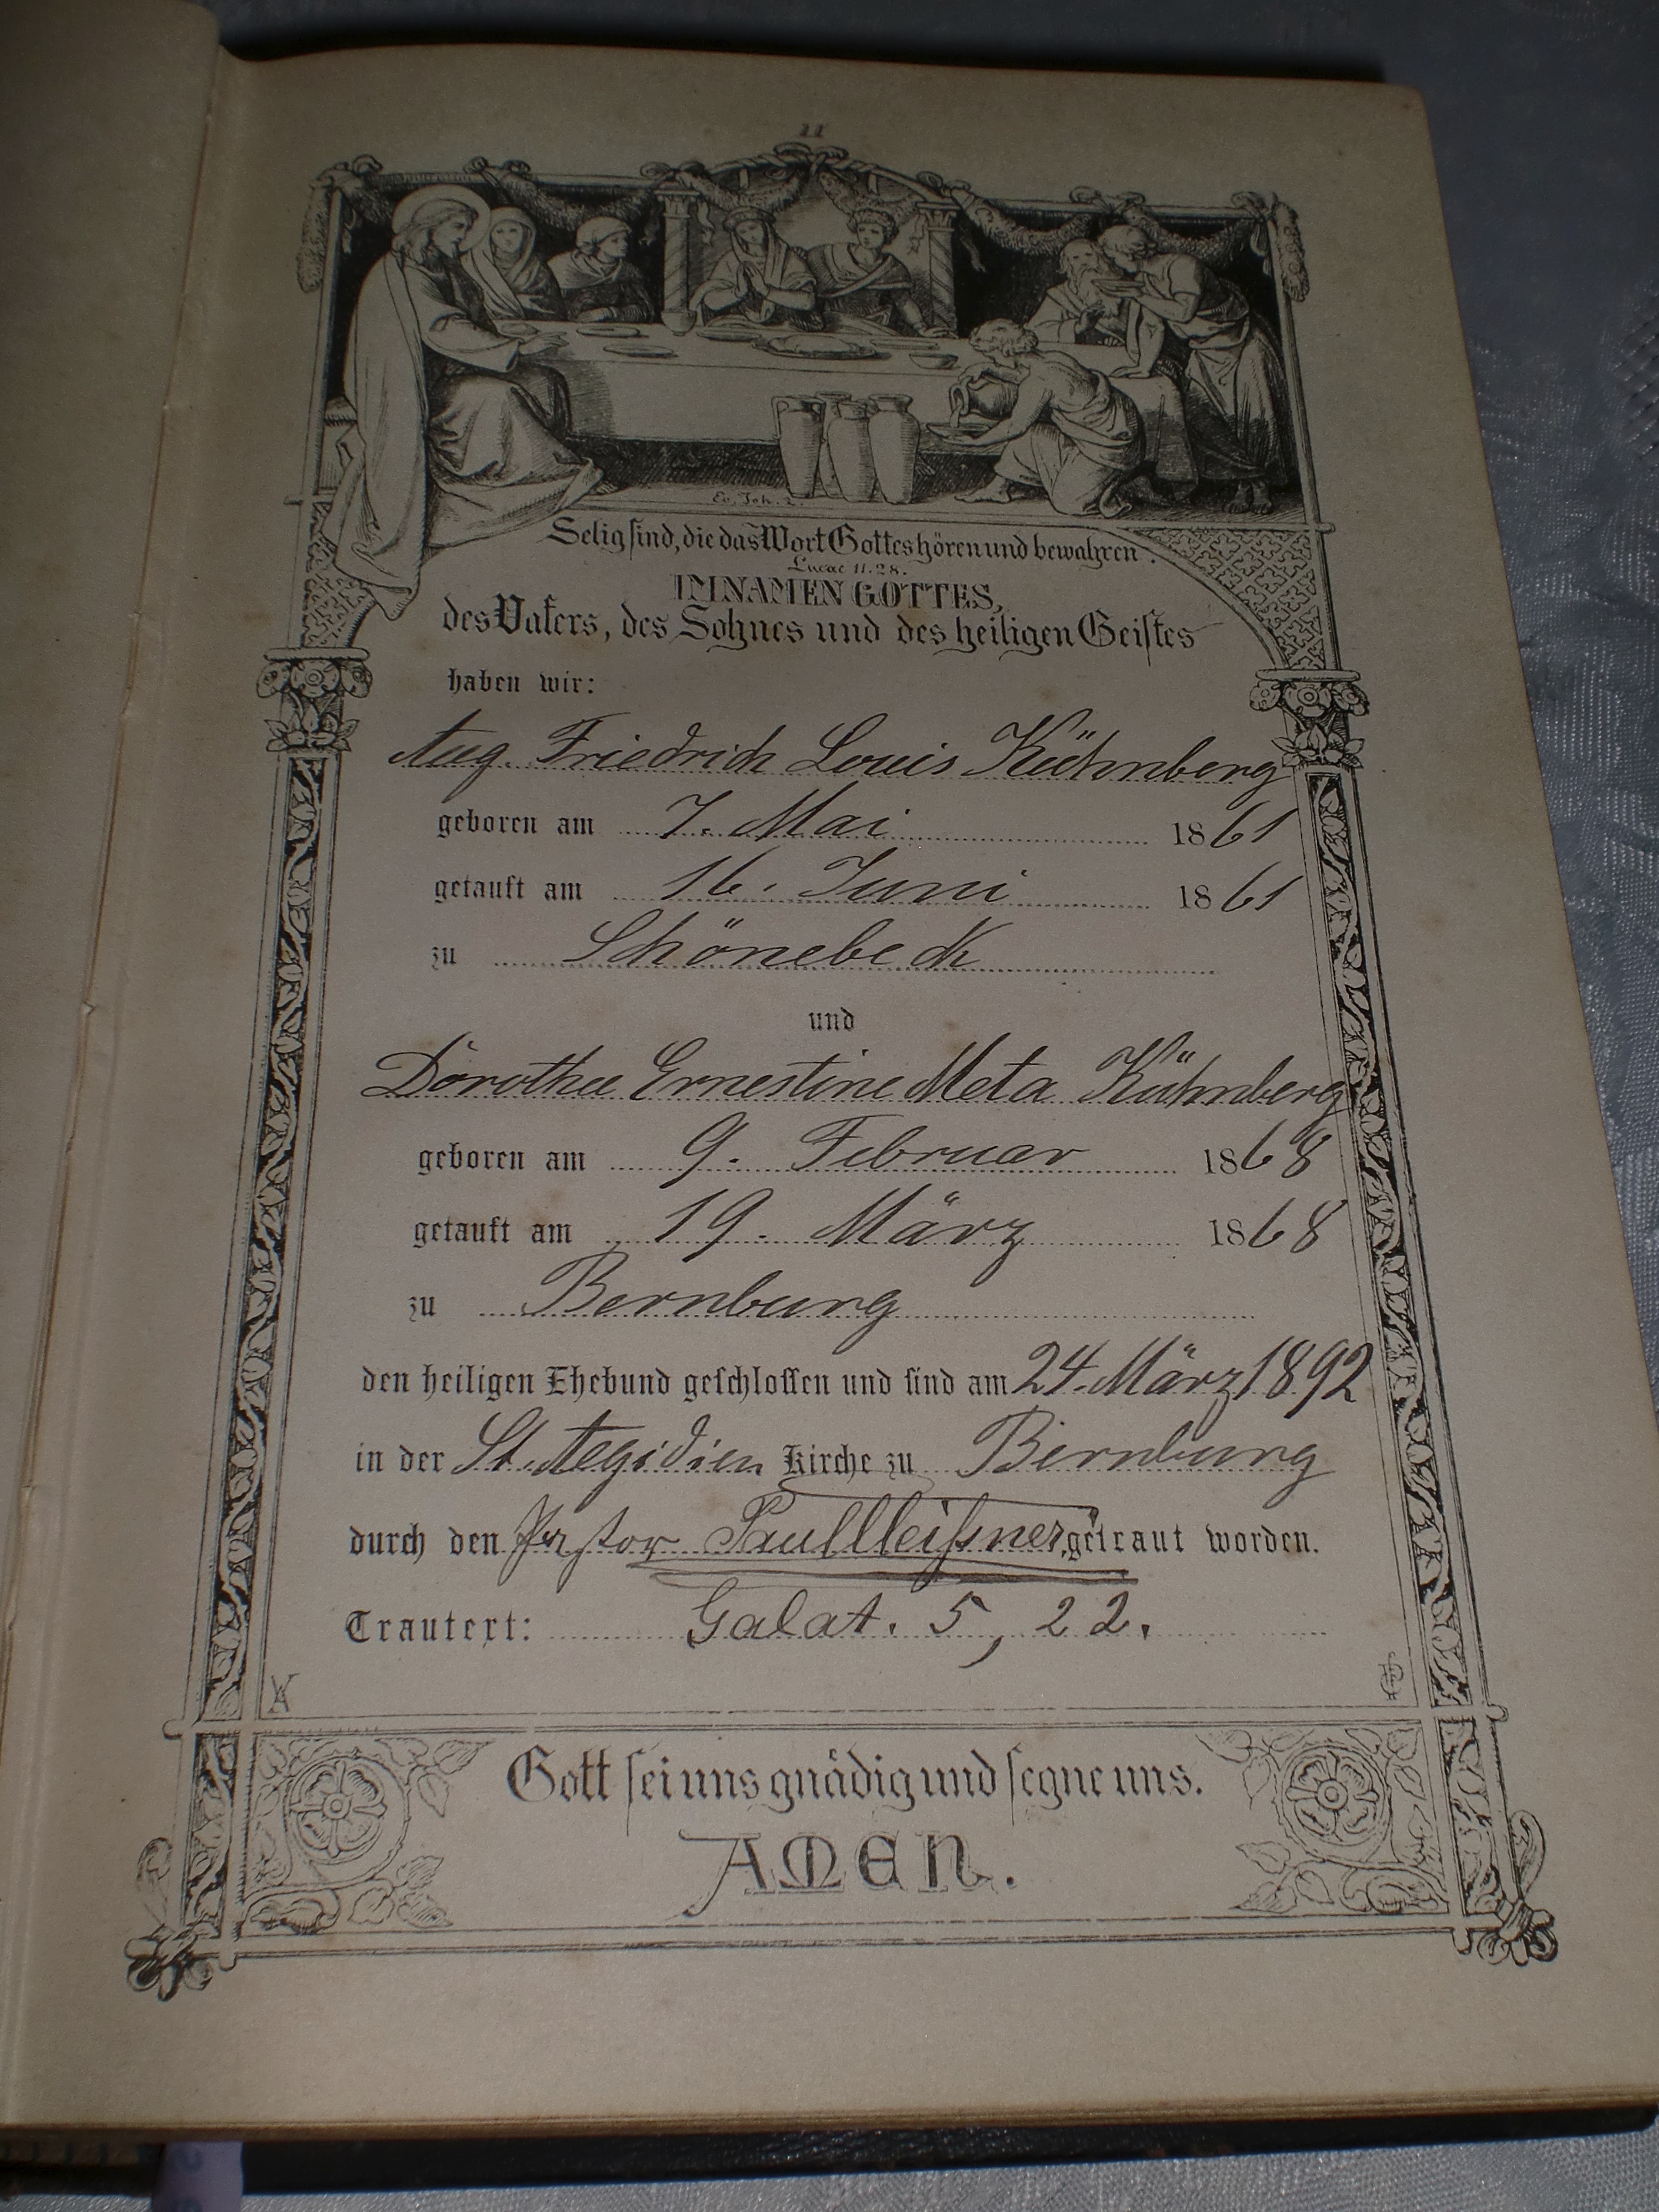 Meta Kühnberg marriage certificate